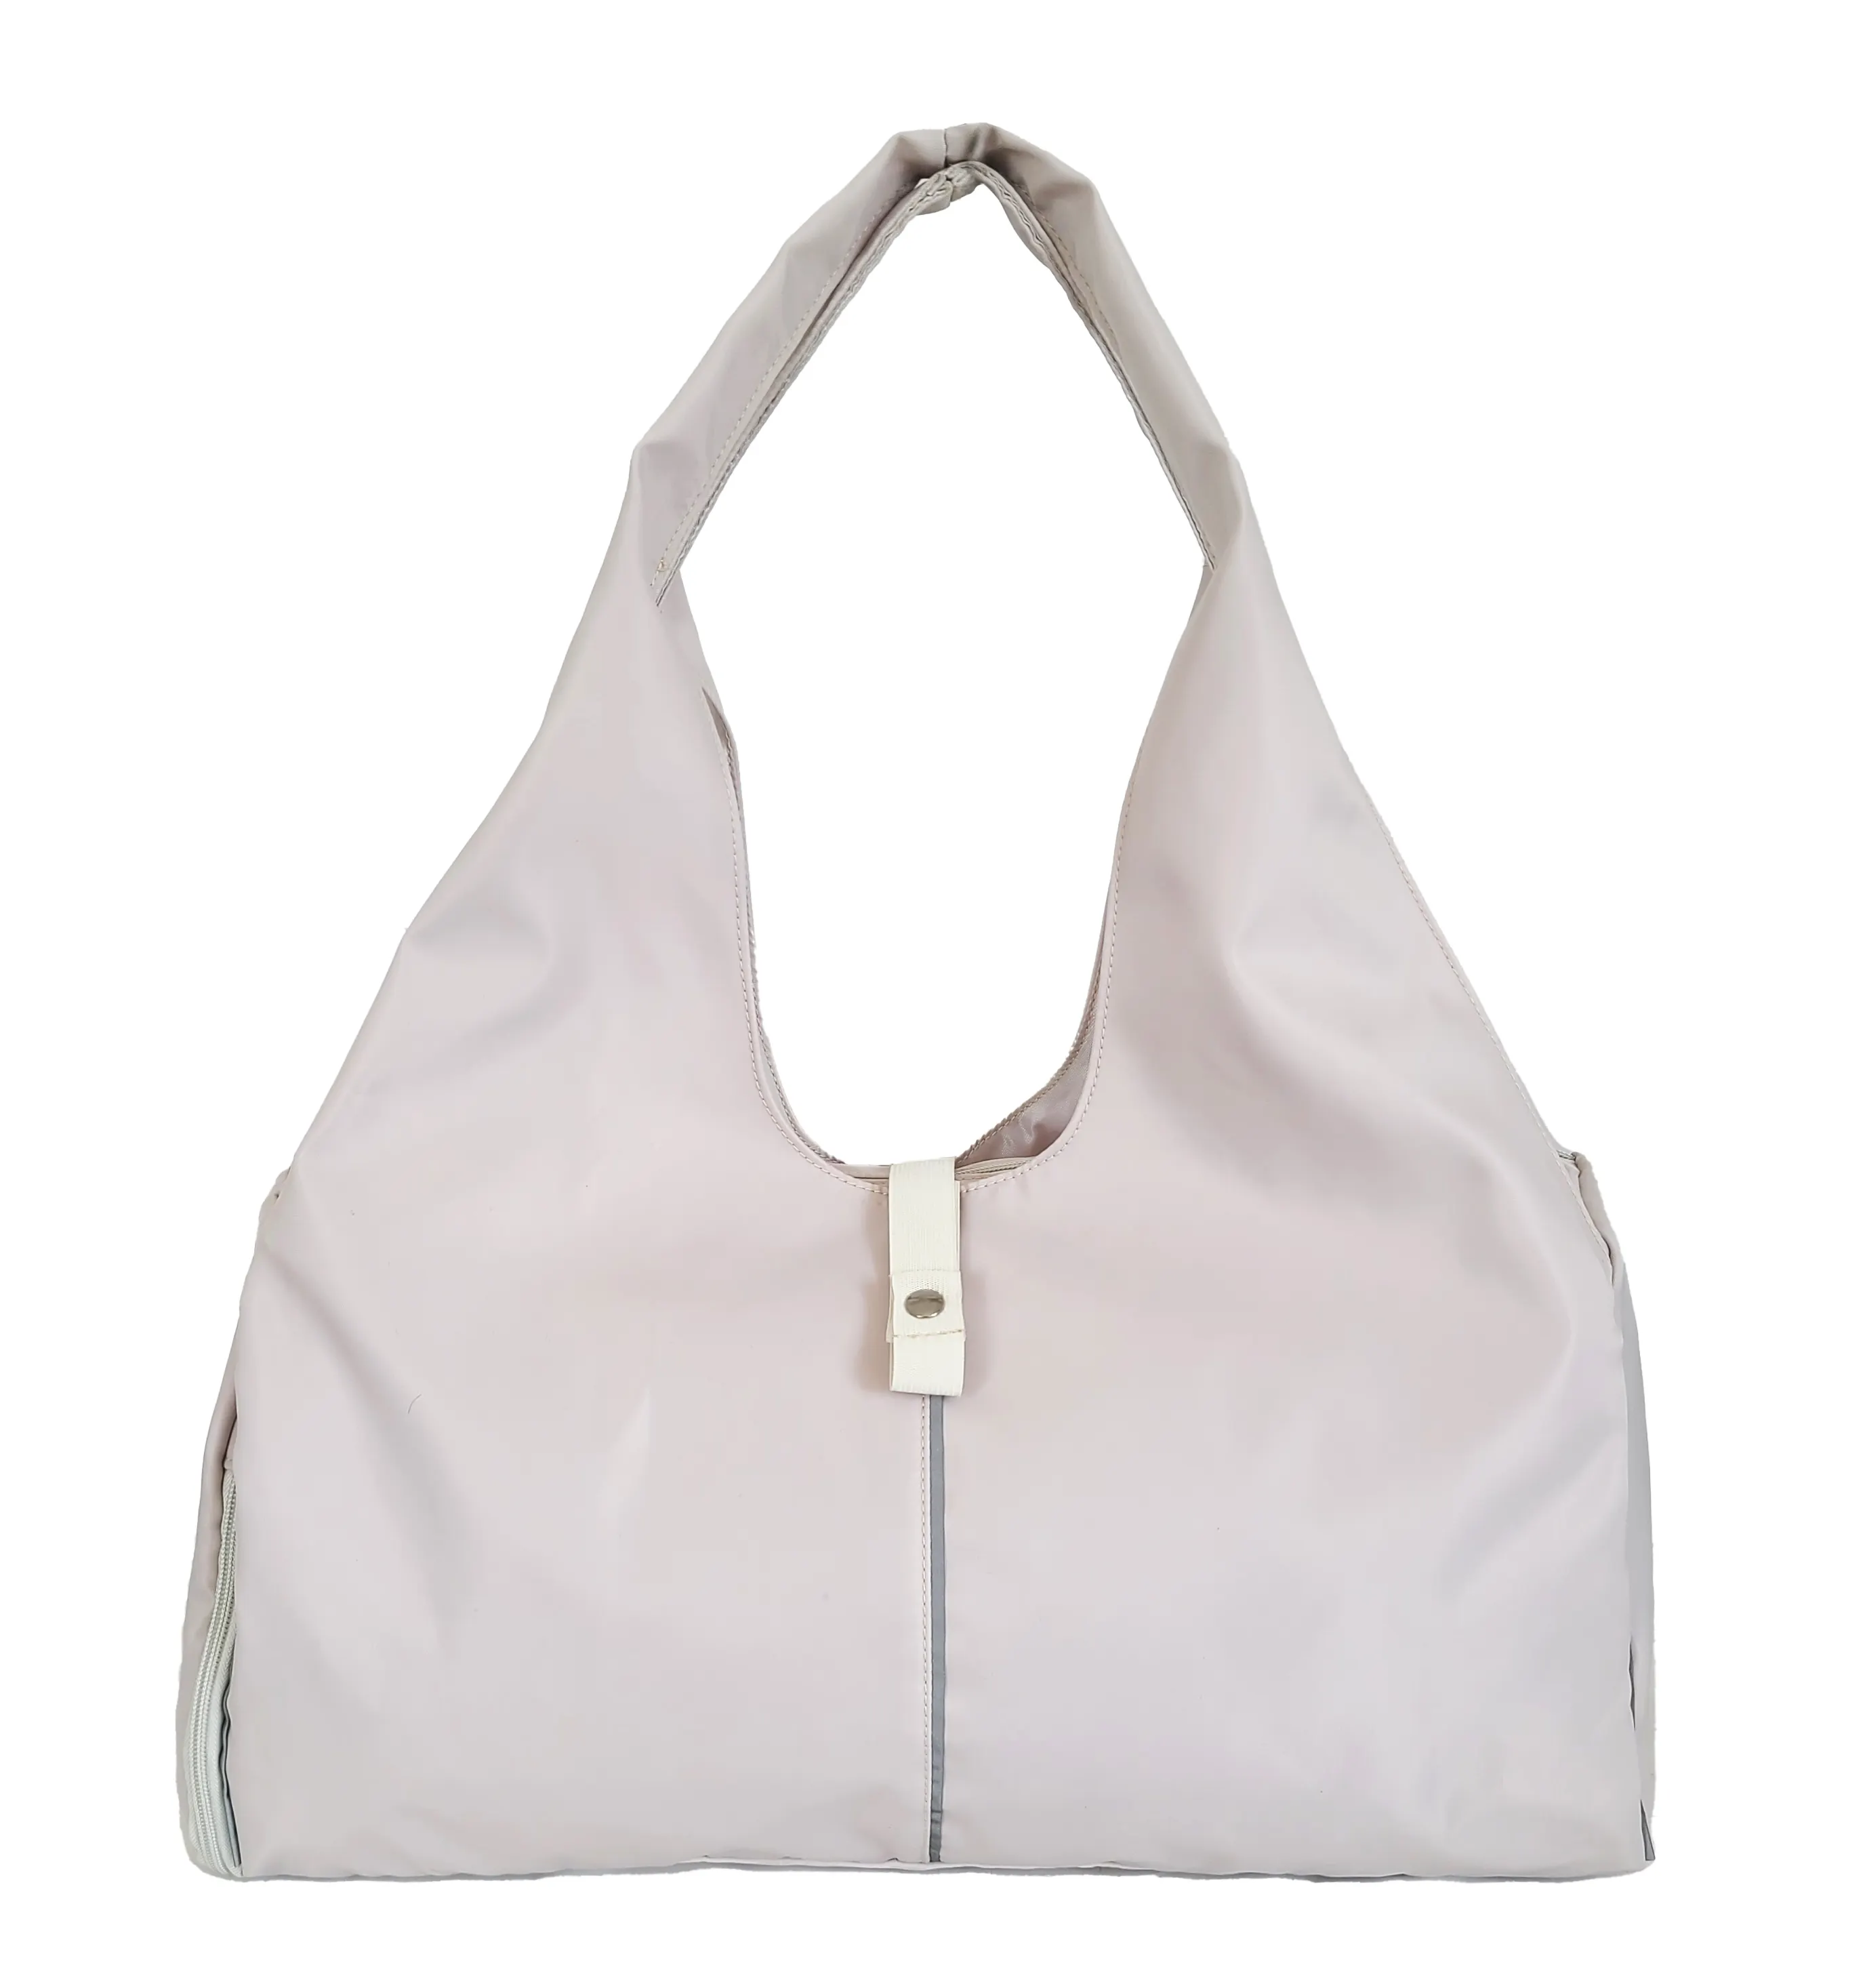 Customized Capacity Yoga Mat Sling Tote Bag Travel Duffle Bag Waterproof Gym Sport Yoga Mat Bag for Woman